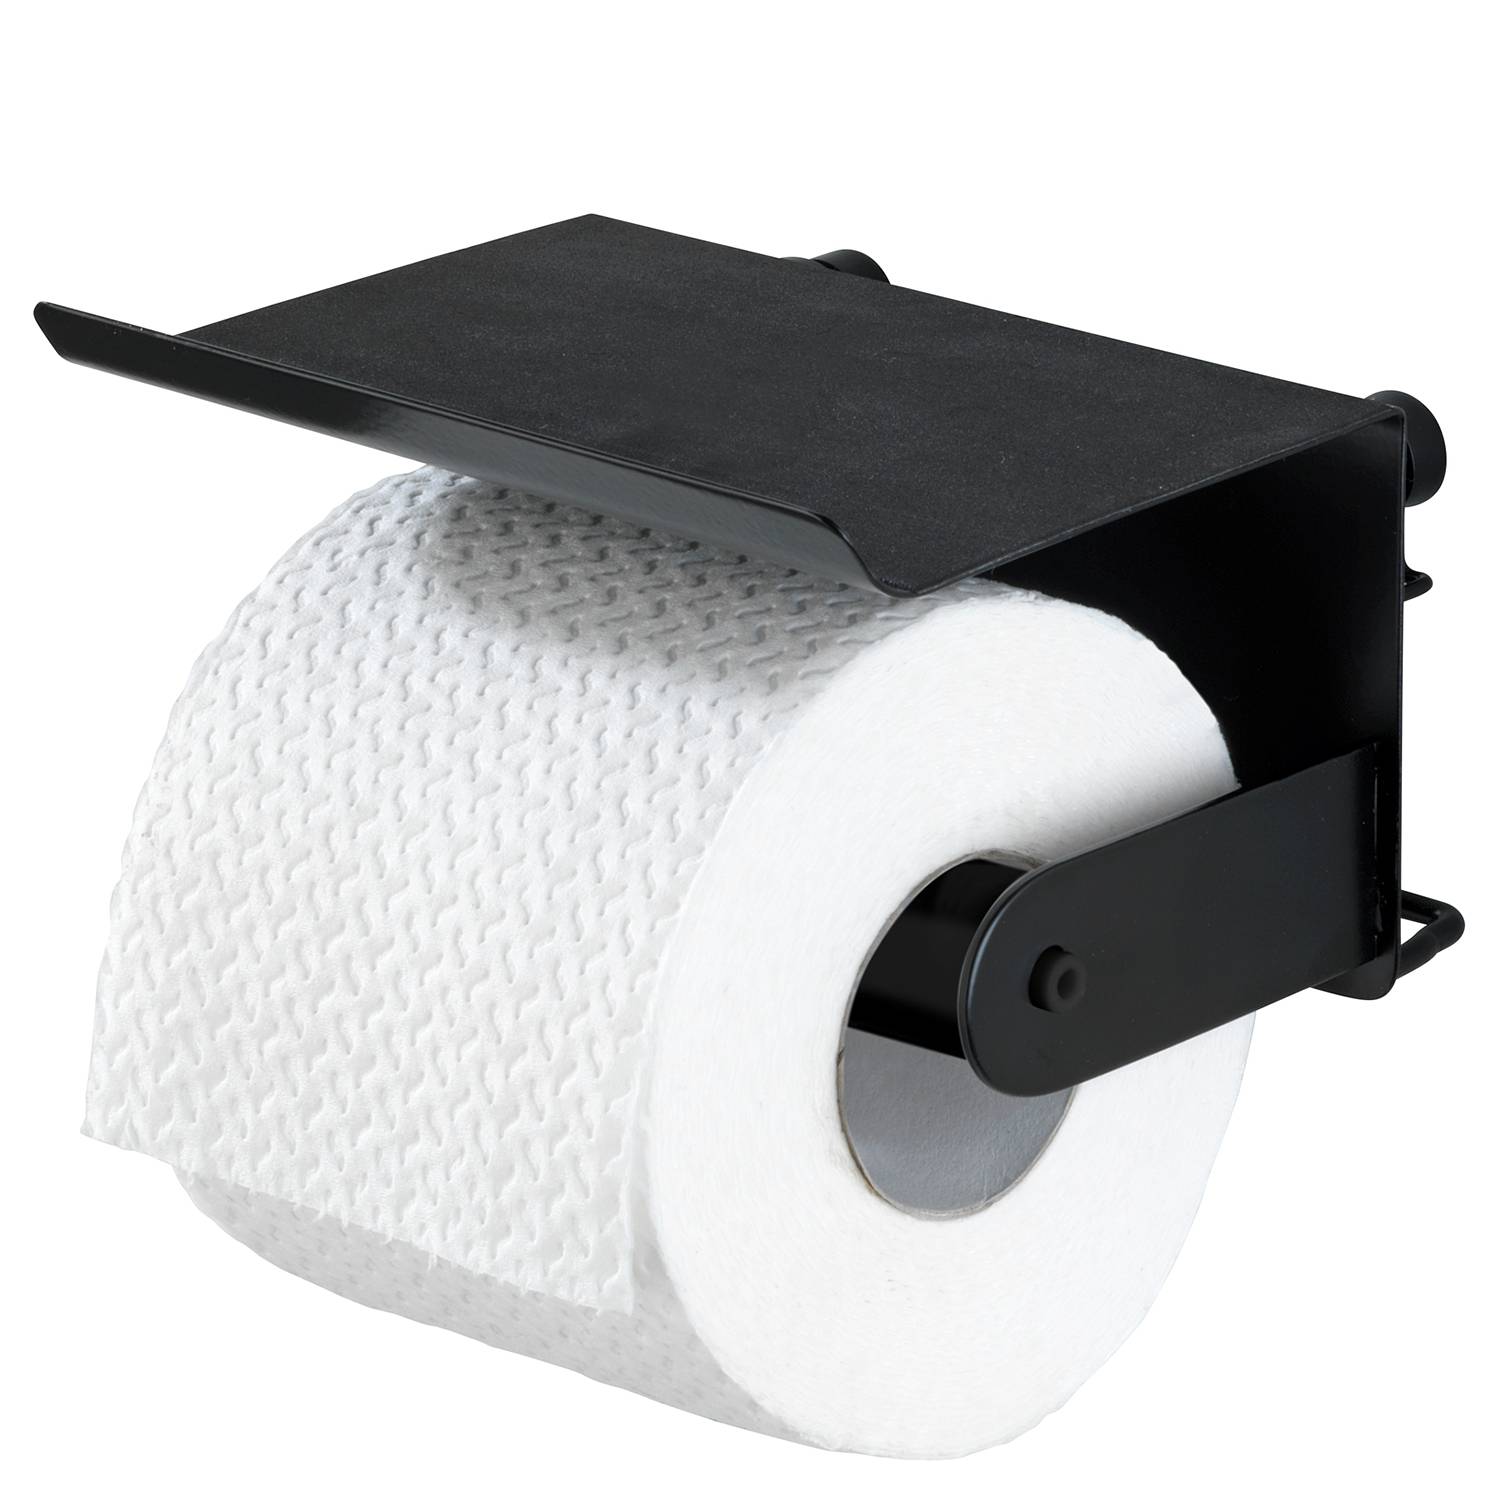 Dérouleur Papier Toilette FRG175-W, Je commande !